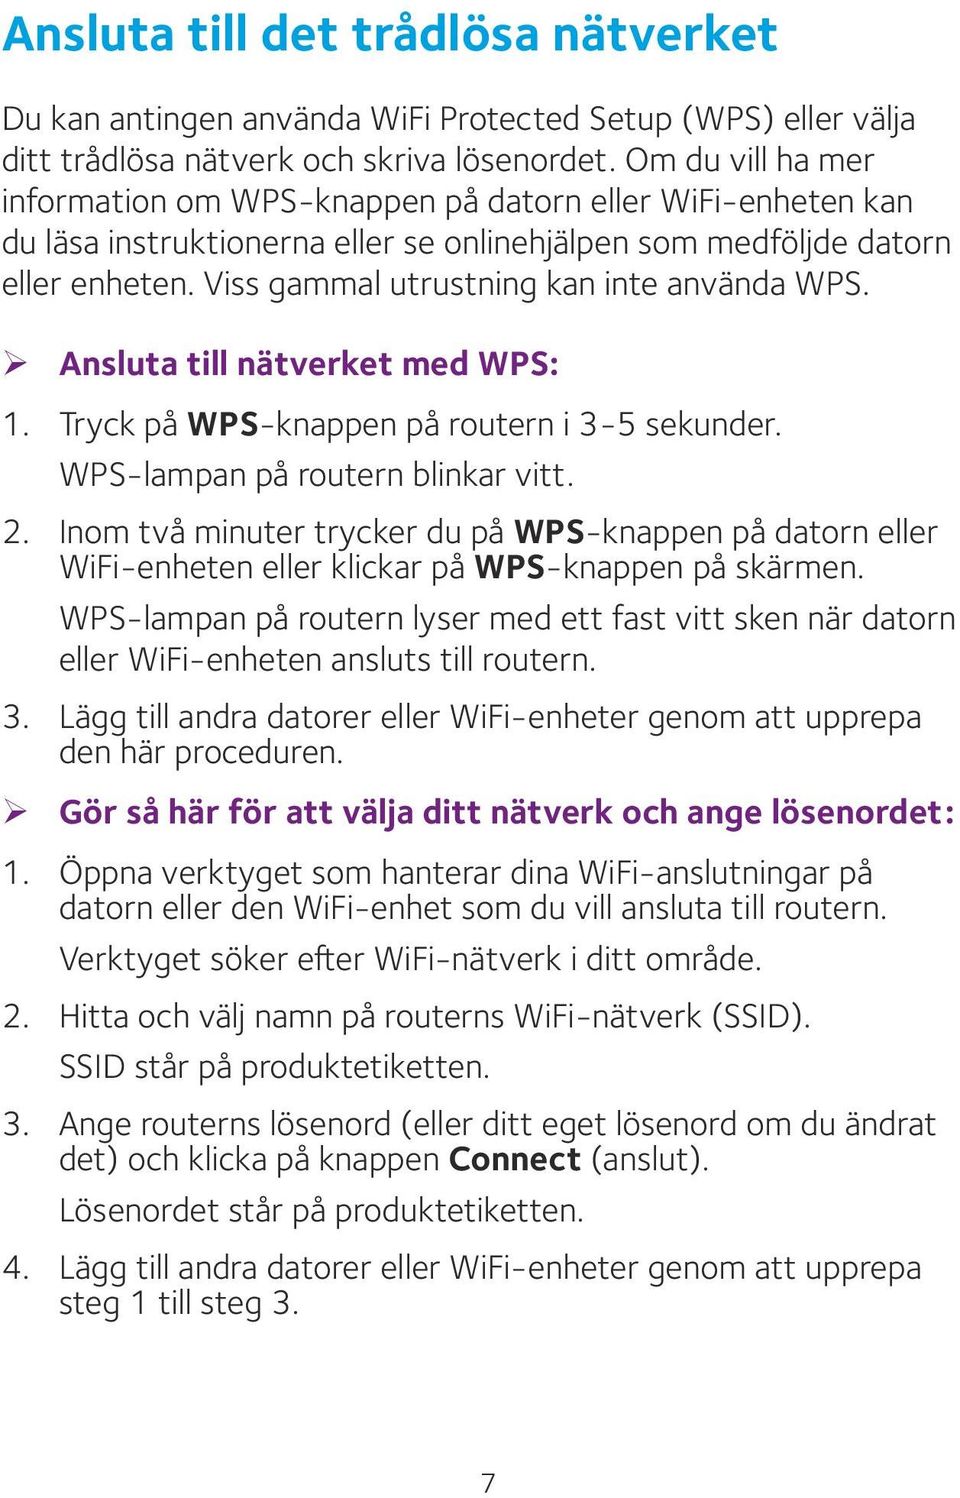 Viss gammal utrustning kan inte använda WPS. ¾ Ansluta till nätverket med WPS: 1. Tryck på WPS-knappen på routern i 3-5 sekunder. WPS-lampan på routern blinkar vitt. 2.